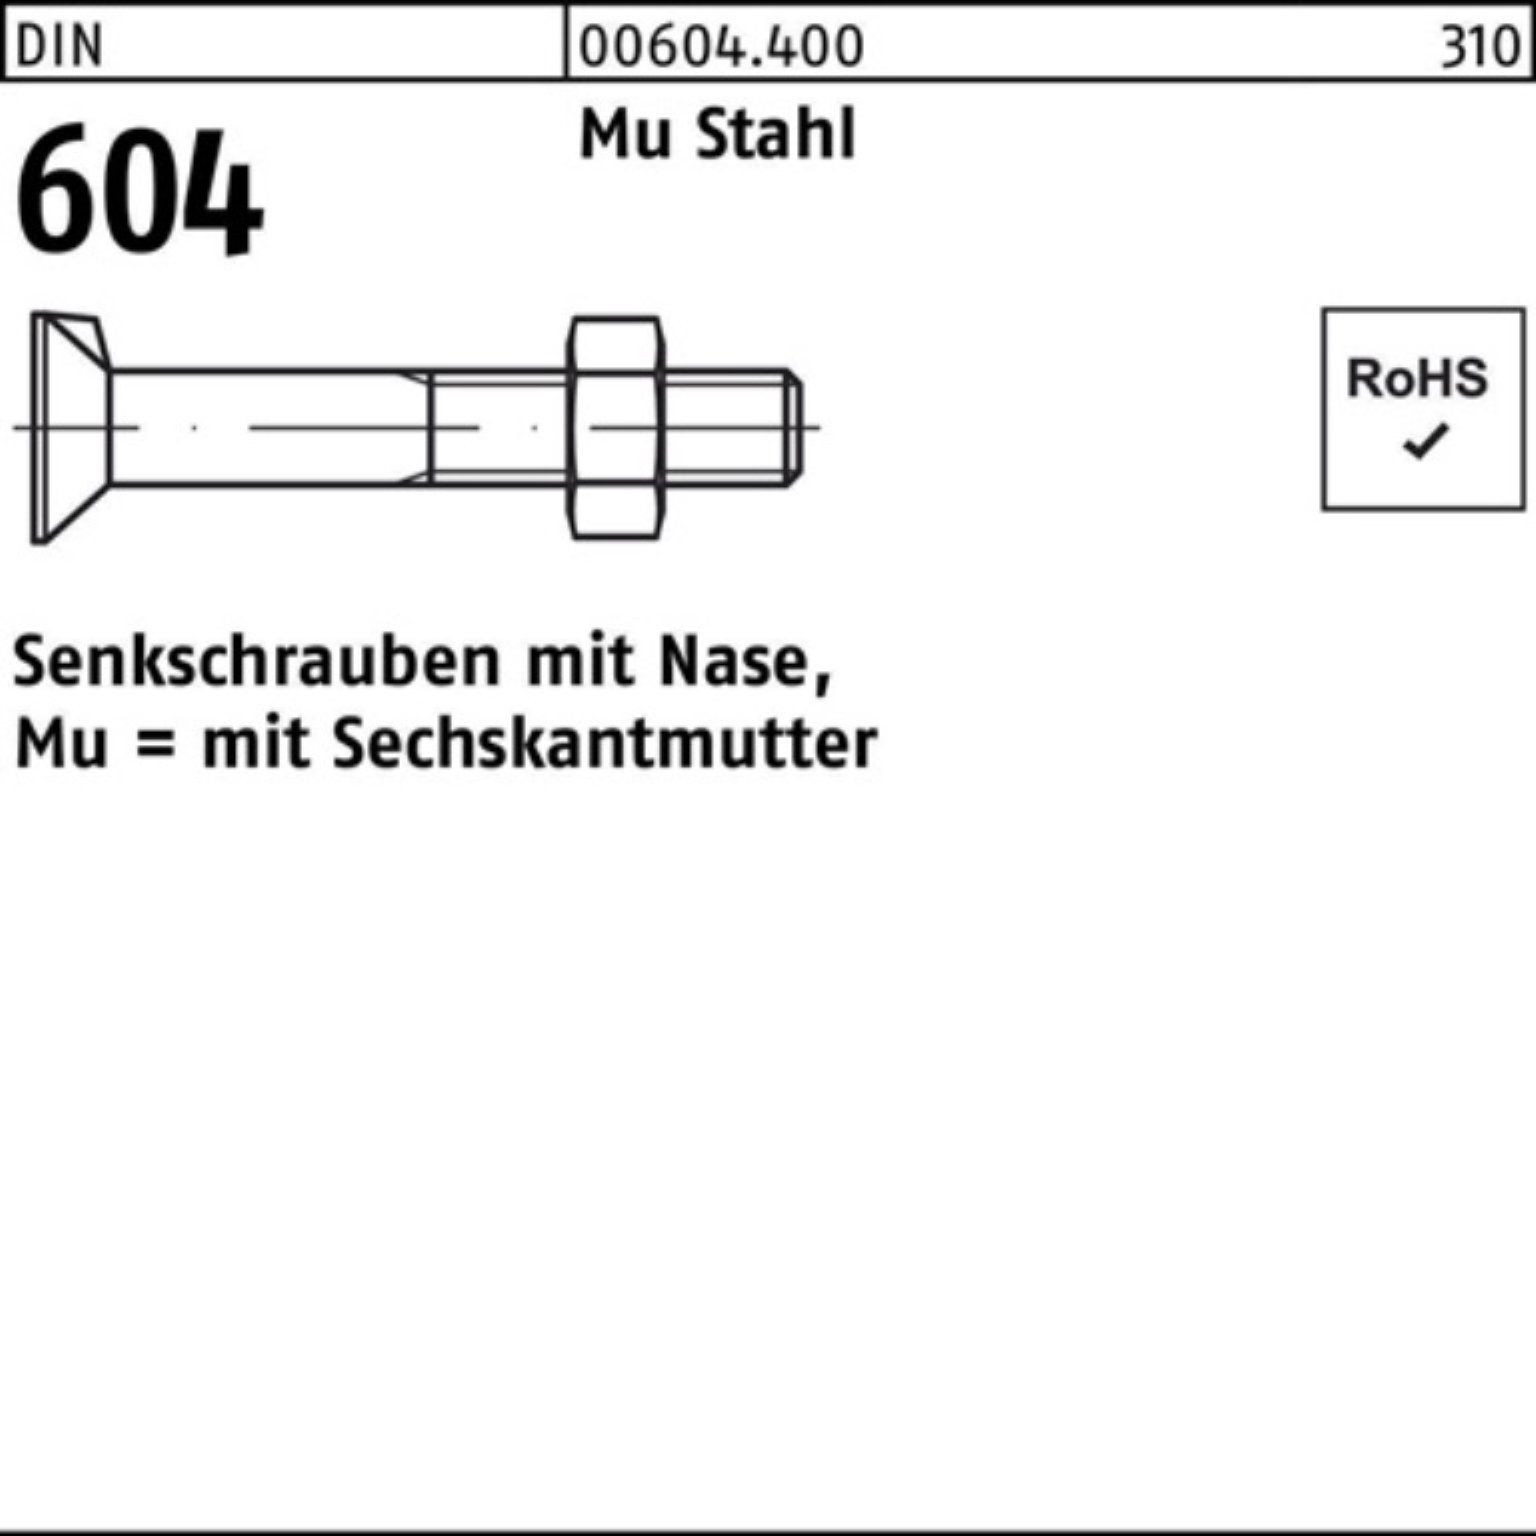 Reyher Senkschraube 100er Pack Senkschraube DIN 604 Nase/6-ktmutter M16x 80 Mu Stahl 4.6 2